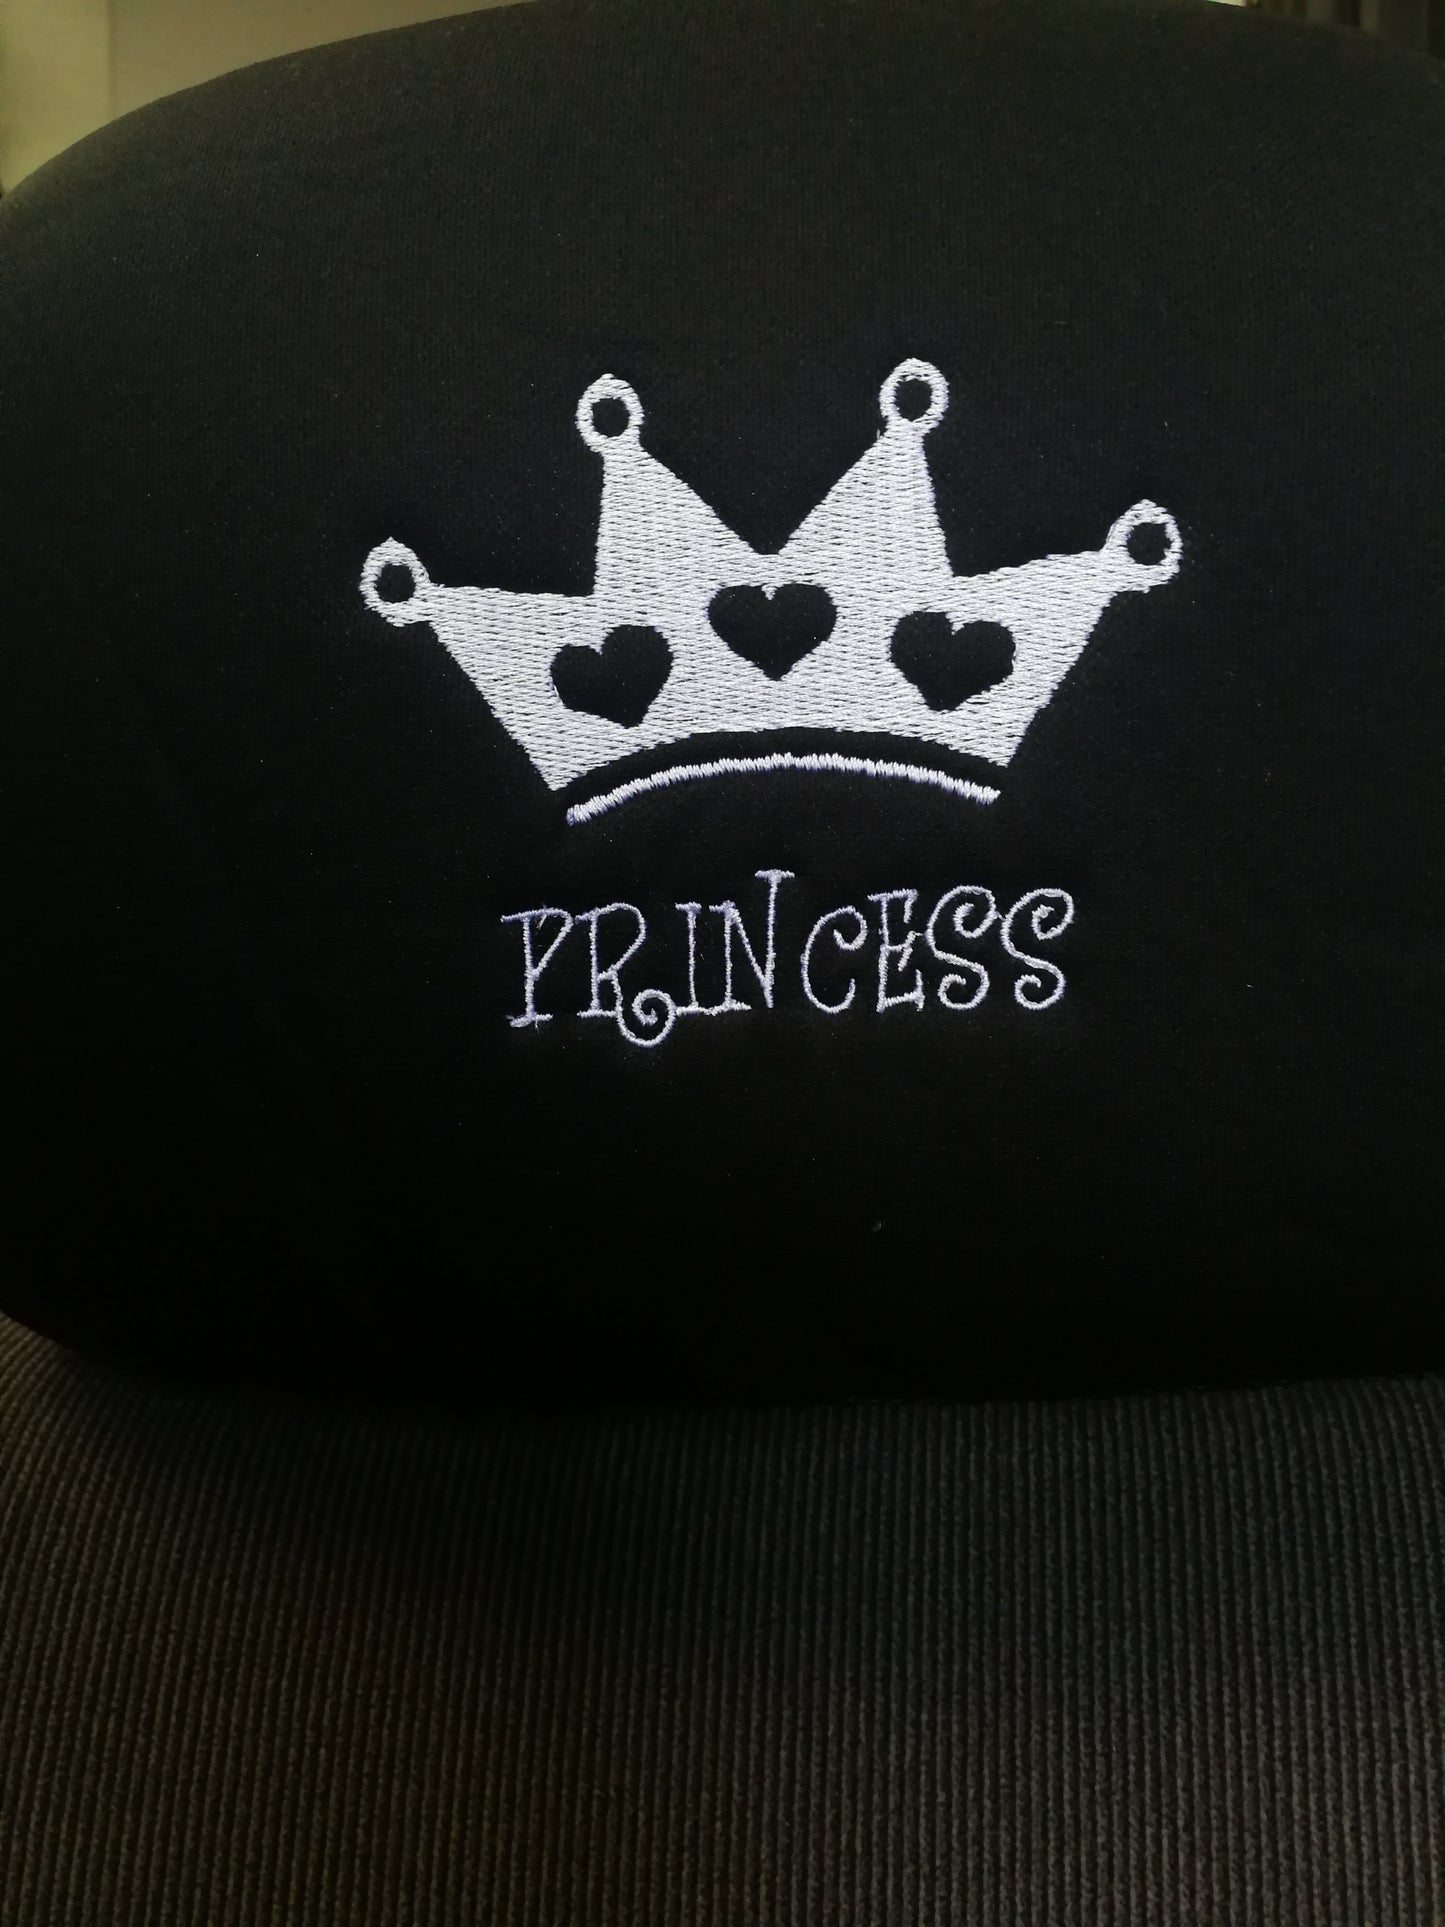 Embroidery Princess Design Auto Truck SUV Car Seat Headrest Cover Accessory 1 Piece - Yupbizauto